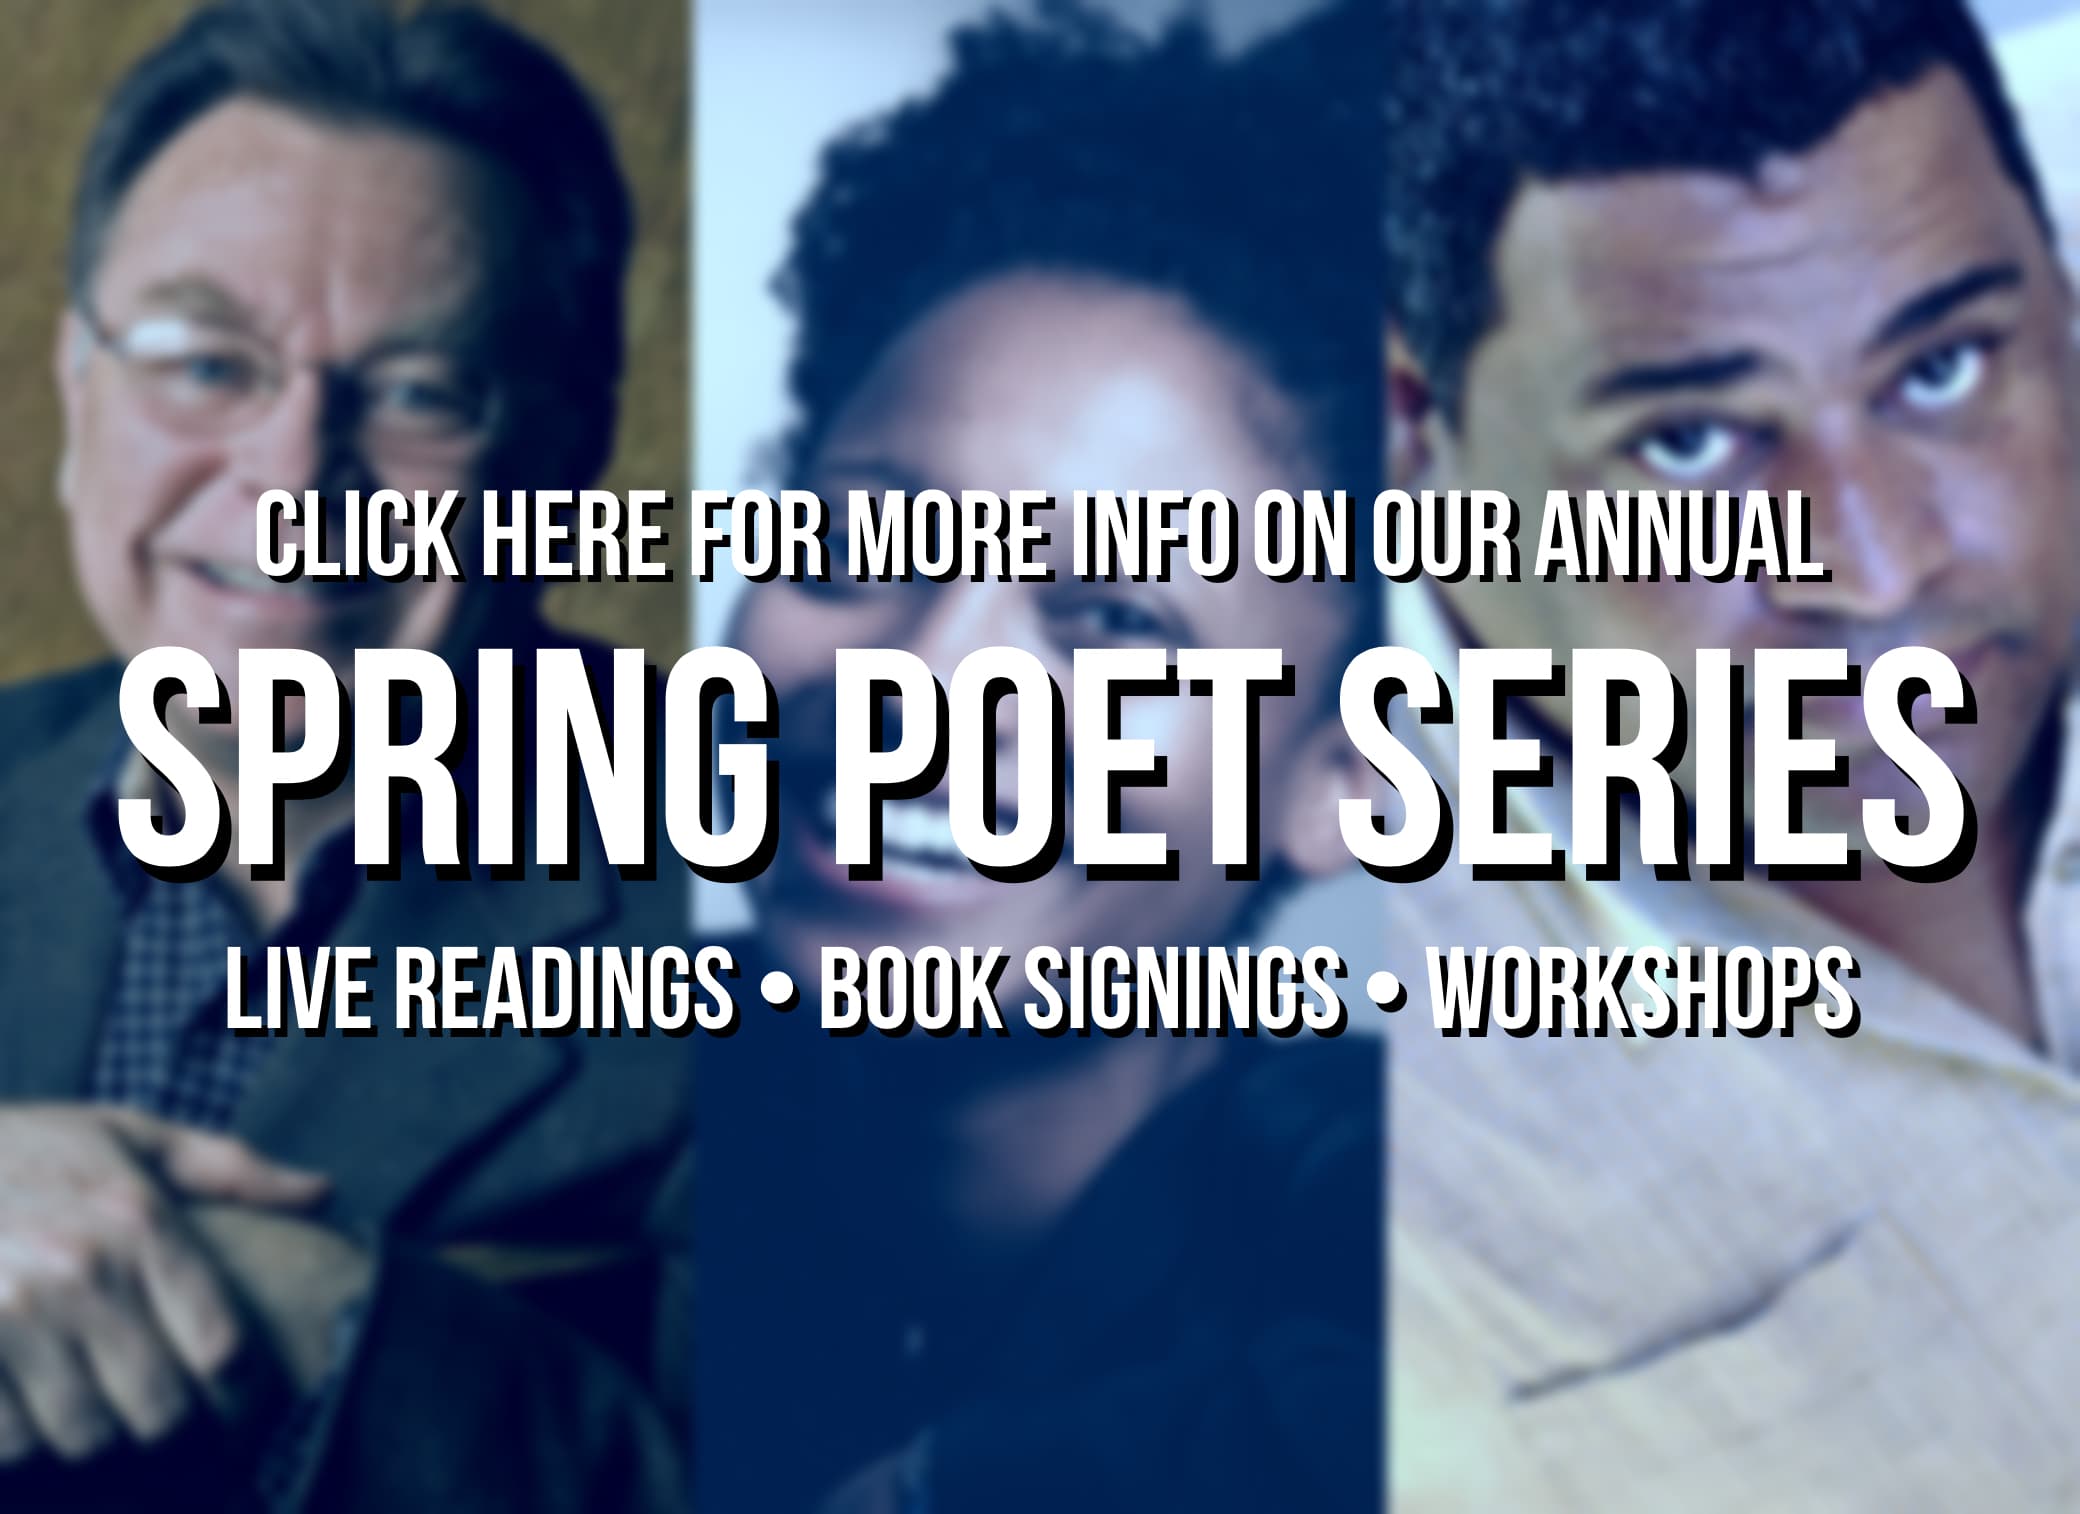 Spring Poet Series Link